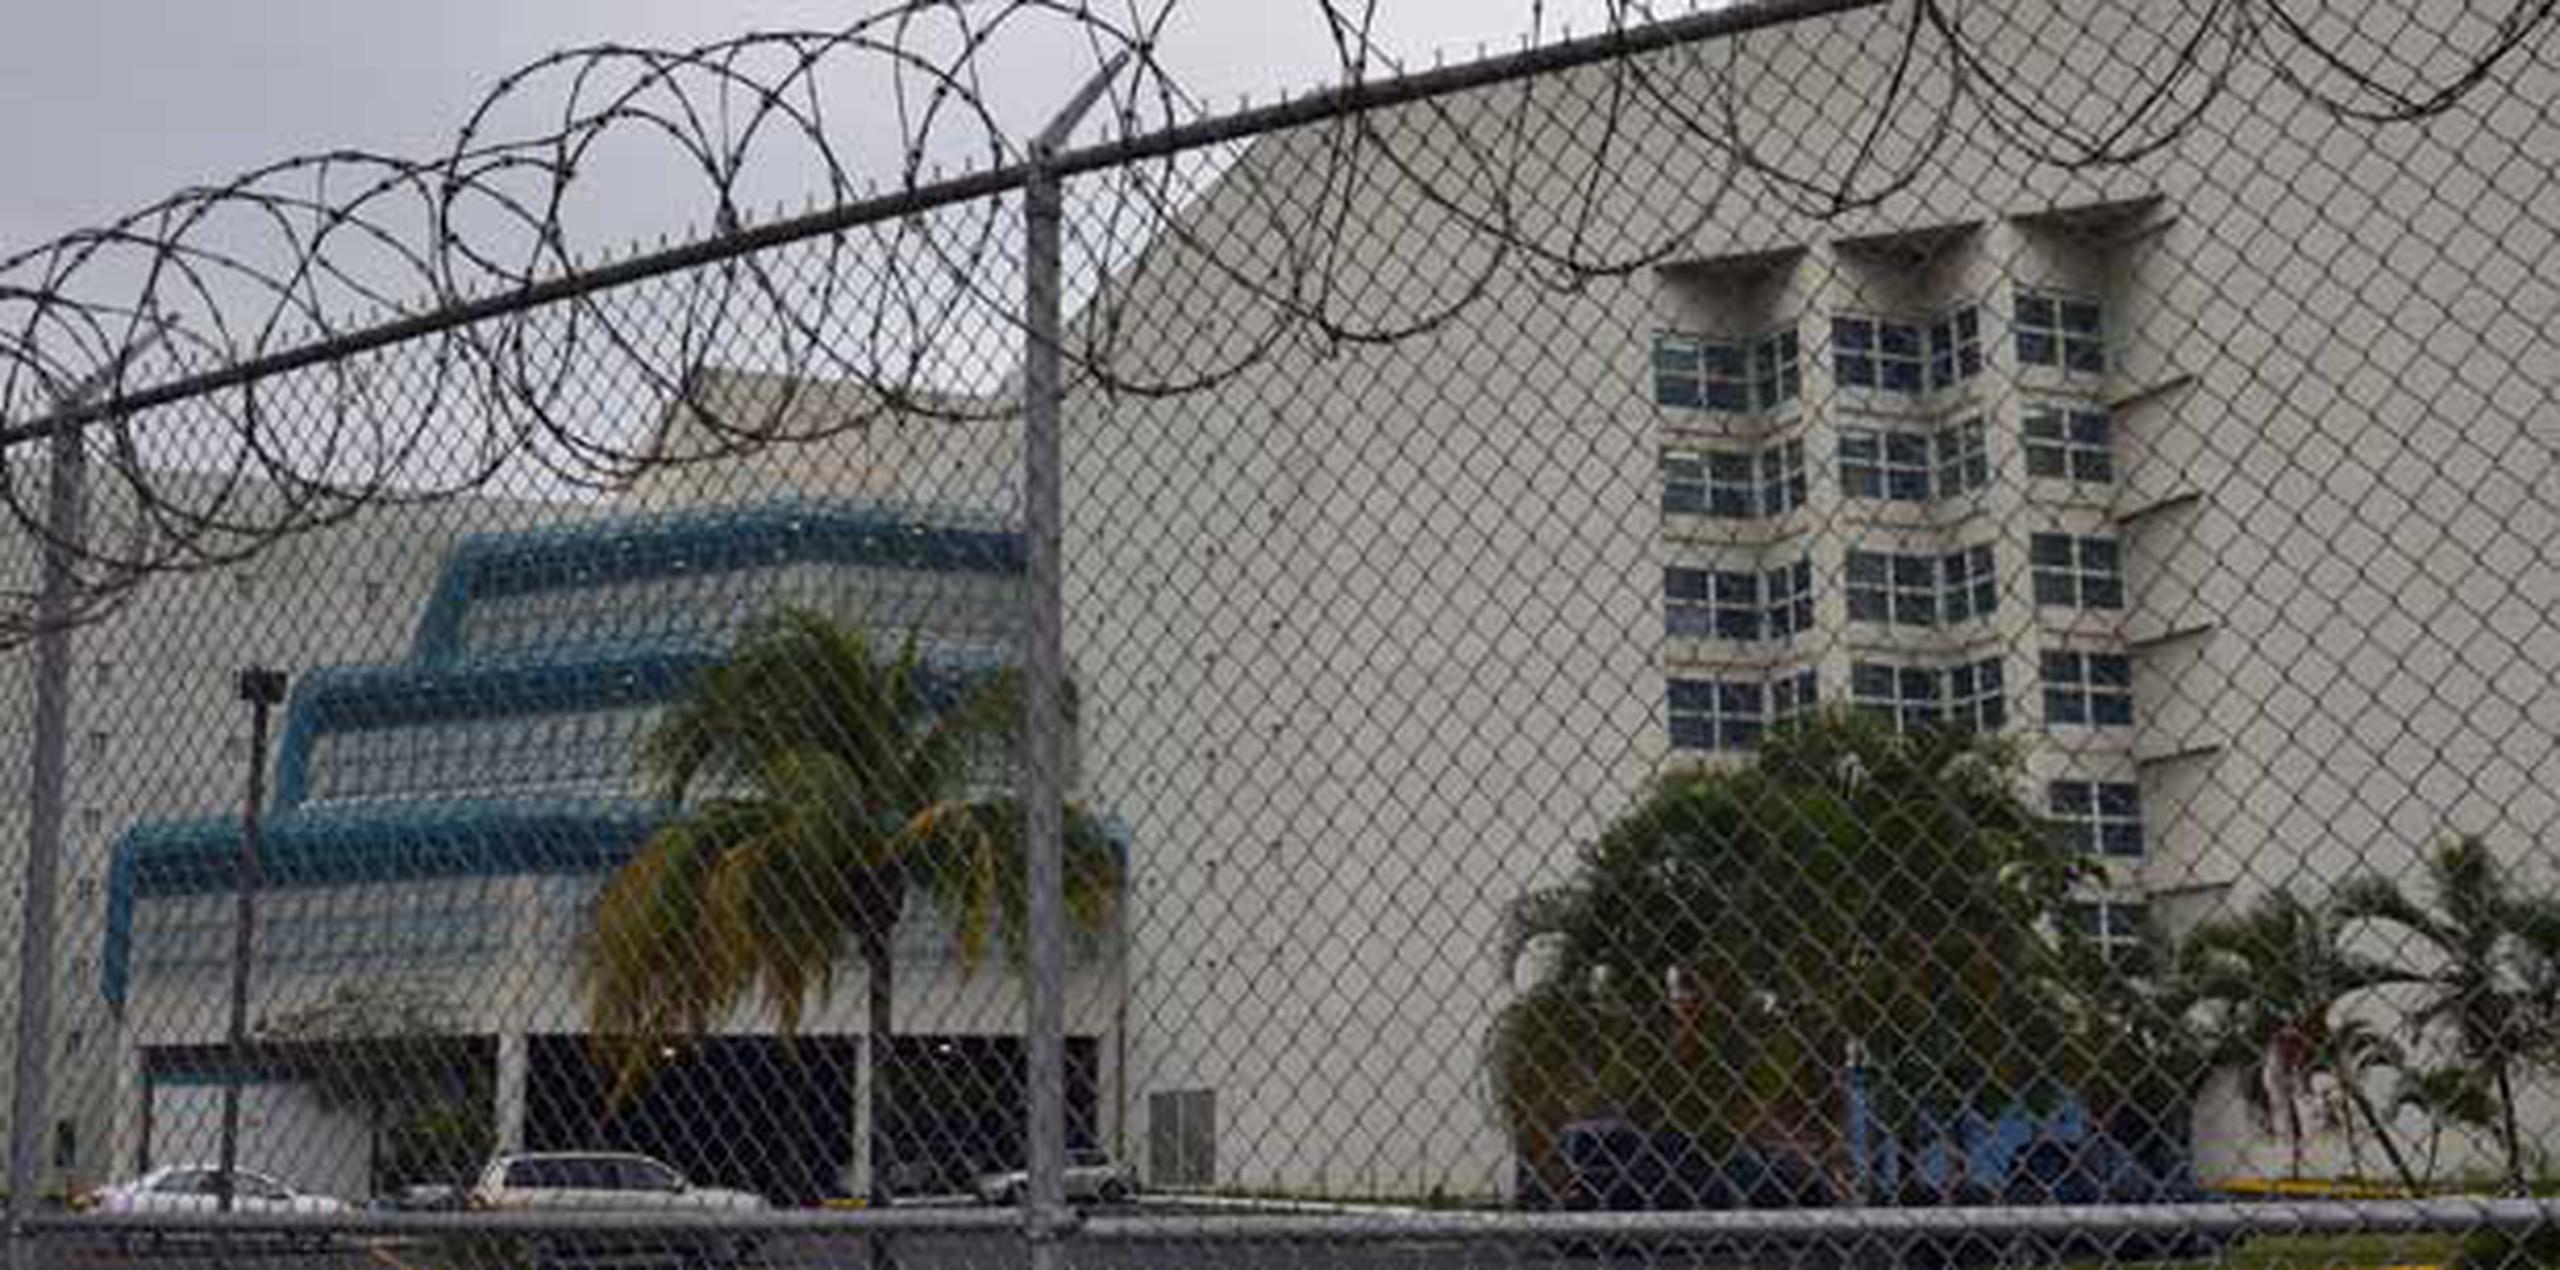 Tras el arresto, se iniciaron las gestiones para la revocación de la probatoria federal para tramitar su ingreso en el Centro de Detención Metropolitano de Guaynabo. (Archivo)
